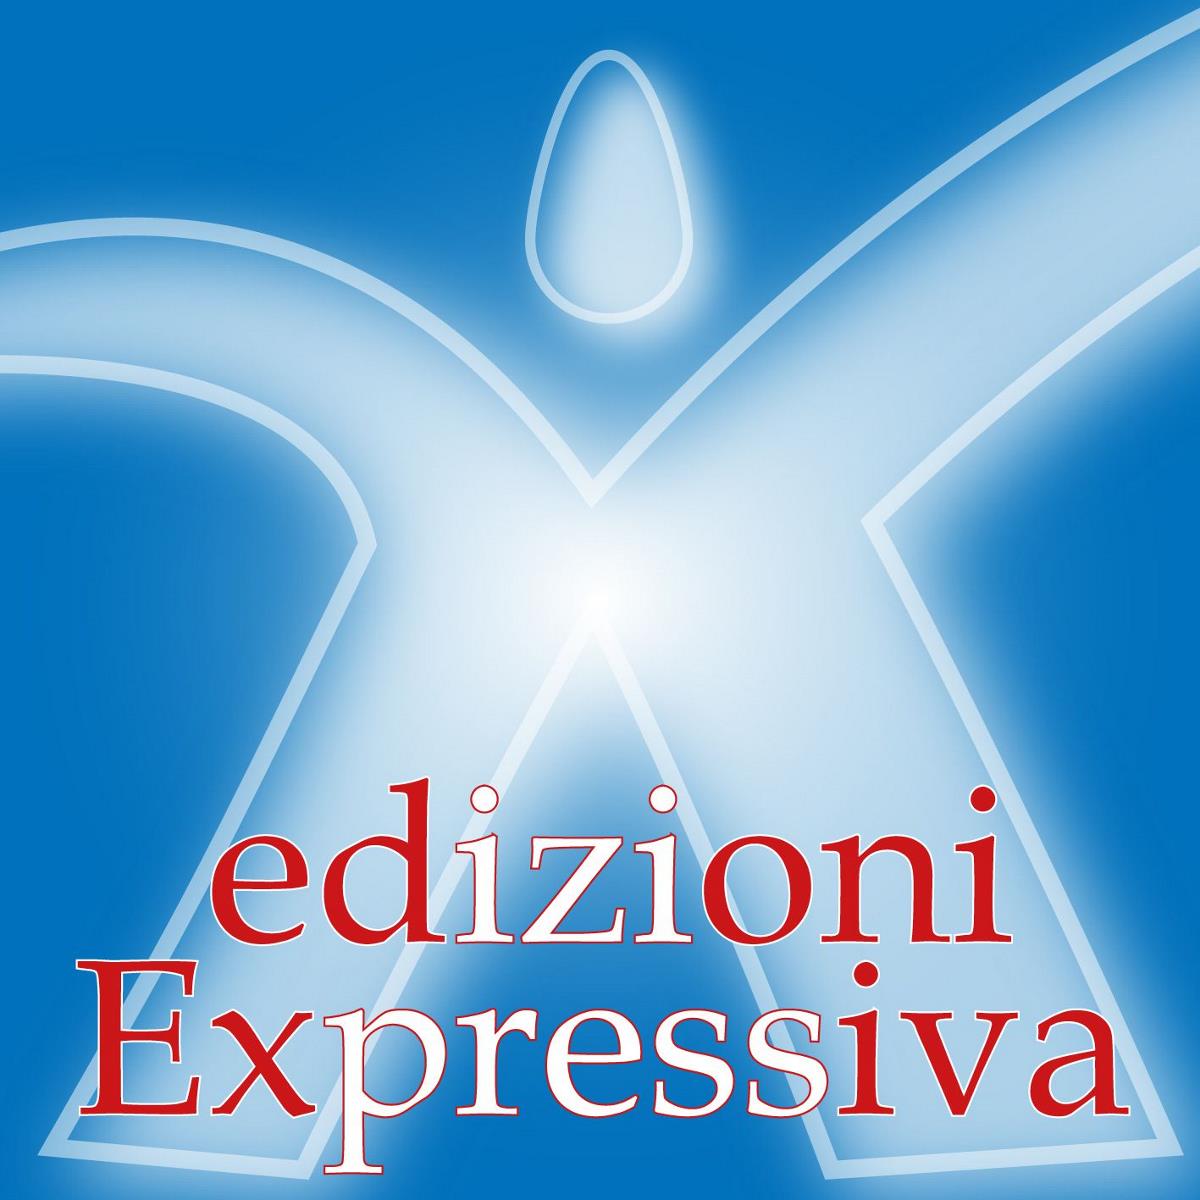 Edizioni Expressiva casa editrice in provincia di Cosenza, Calabria. Pubblicazione di romanzi, poesie, lettereatura per l'infanzia